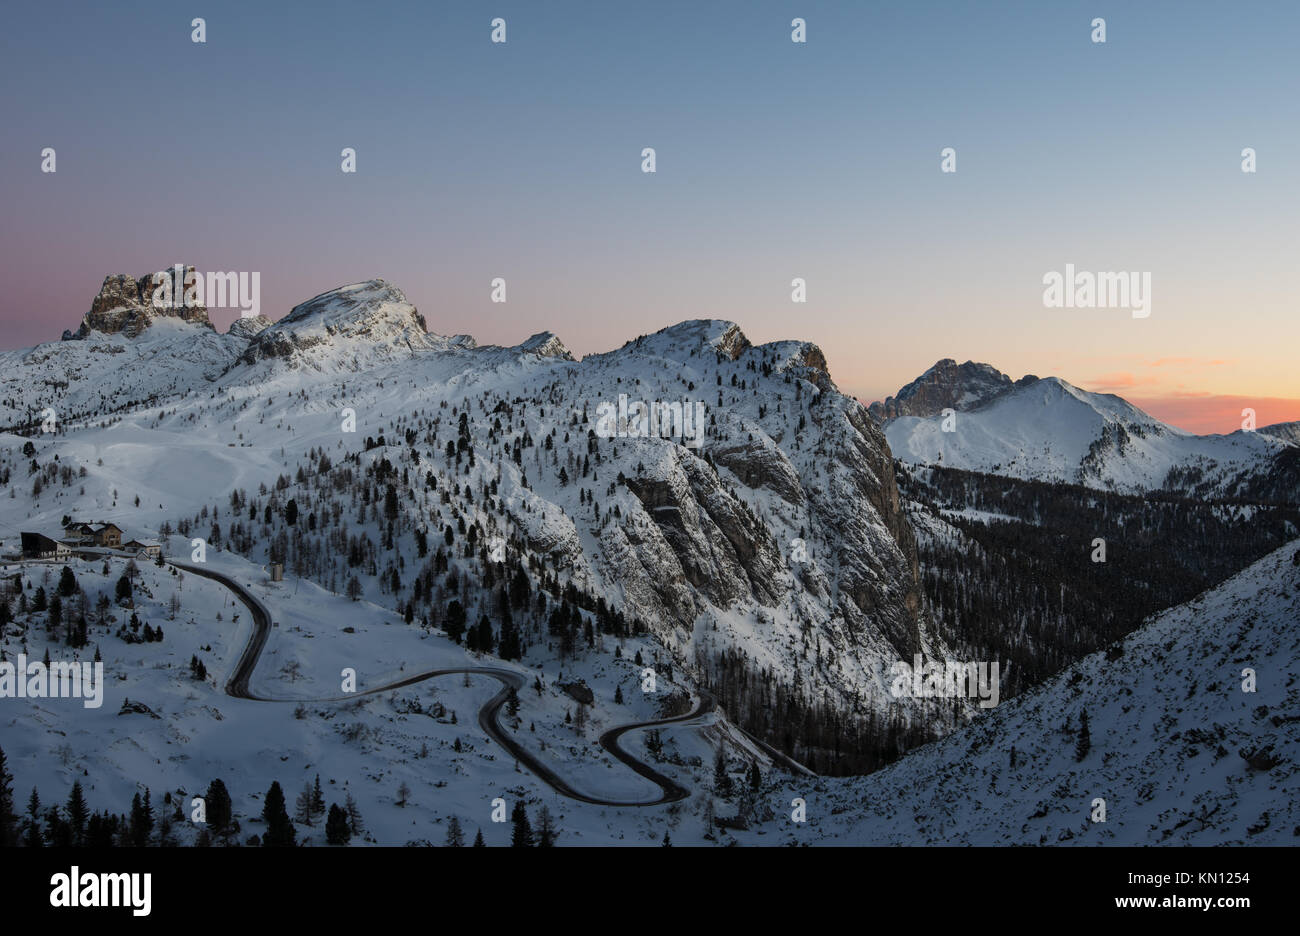 Sass de Stria falzarego pass Dolomites Stock Photo